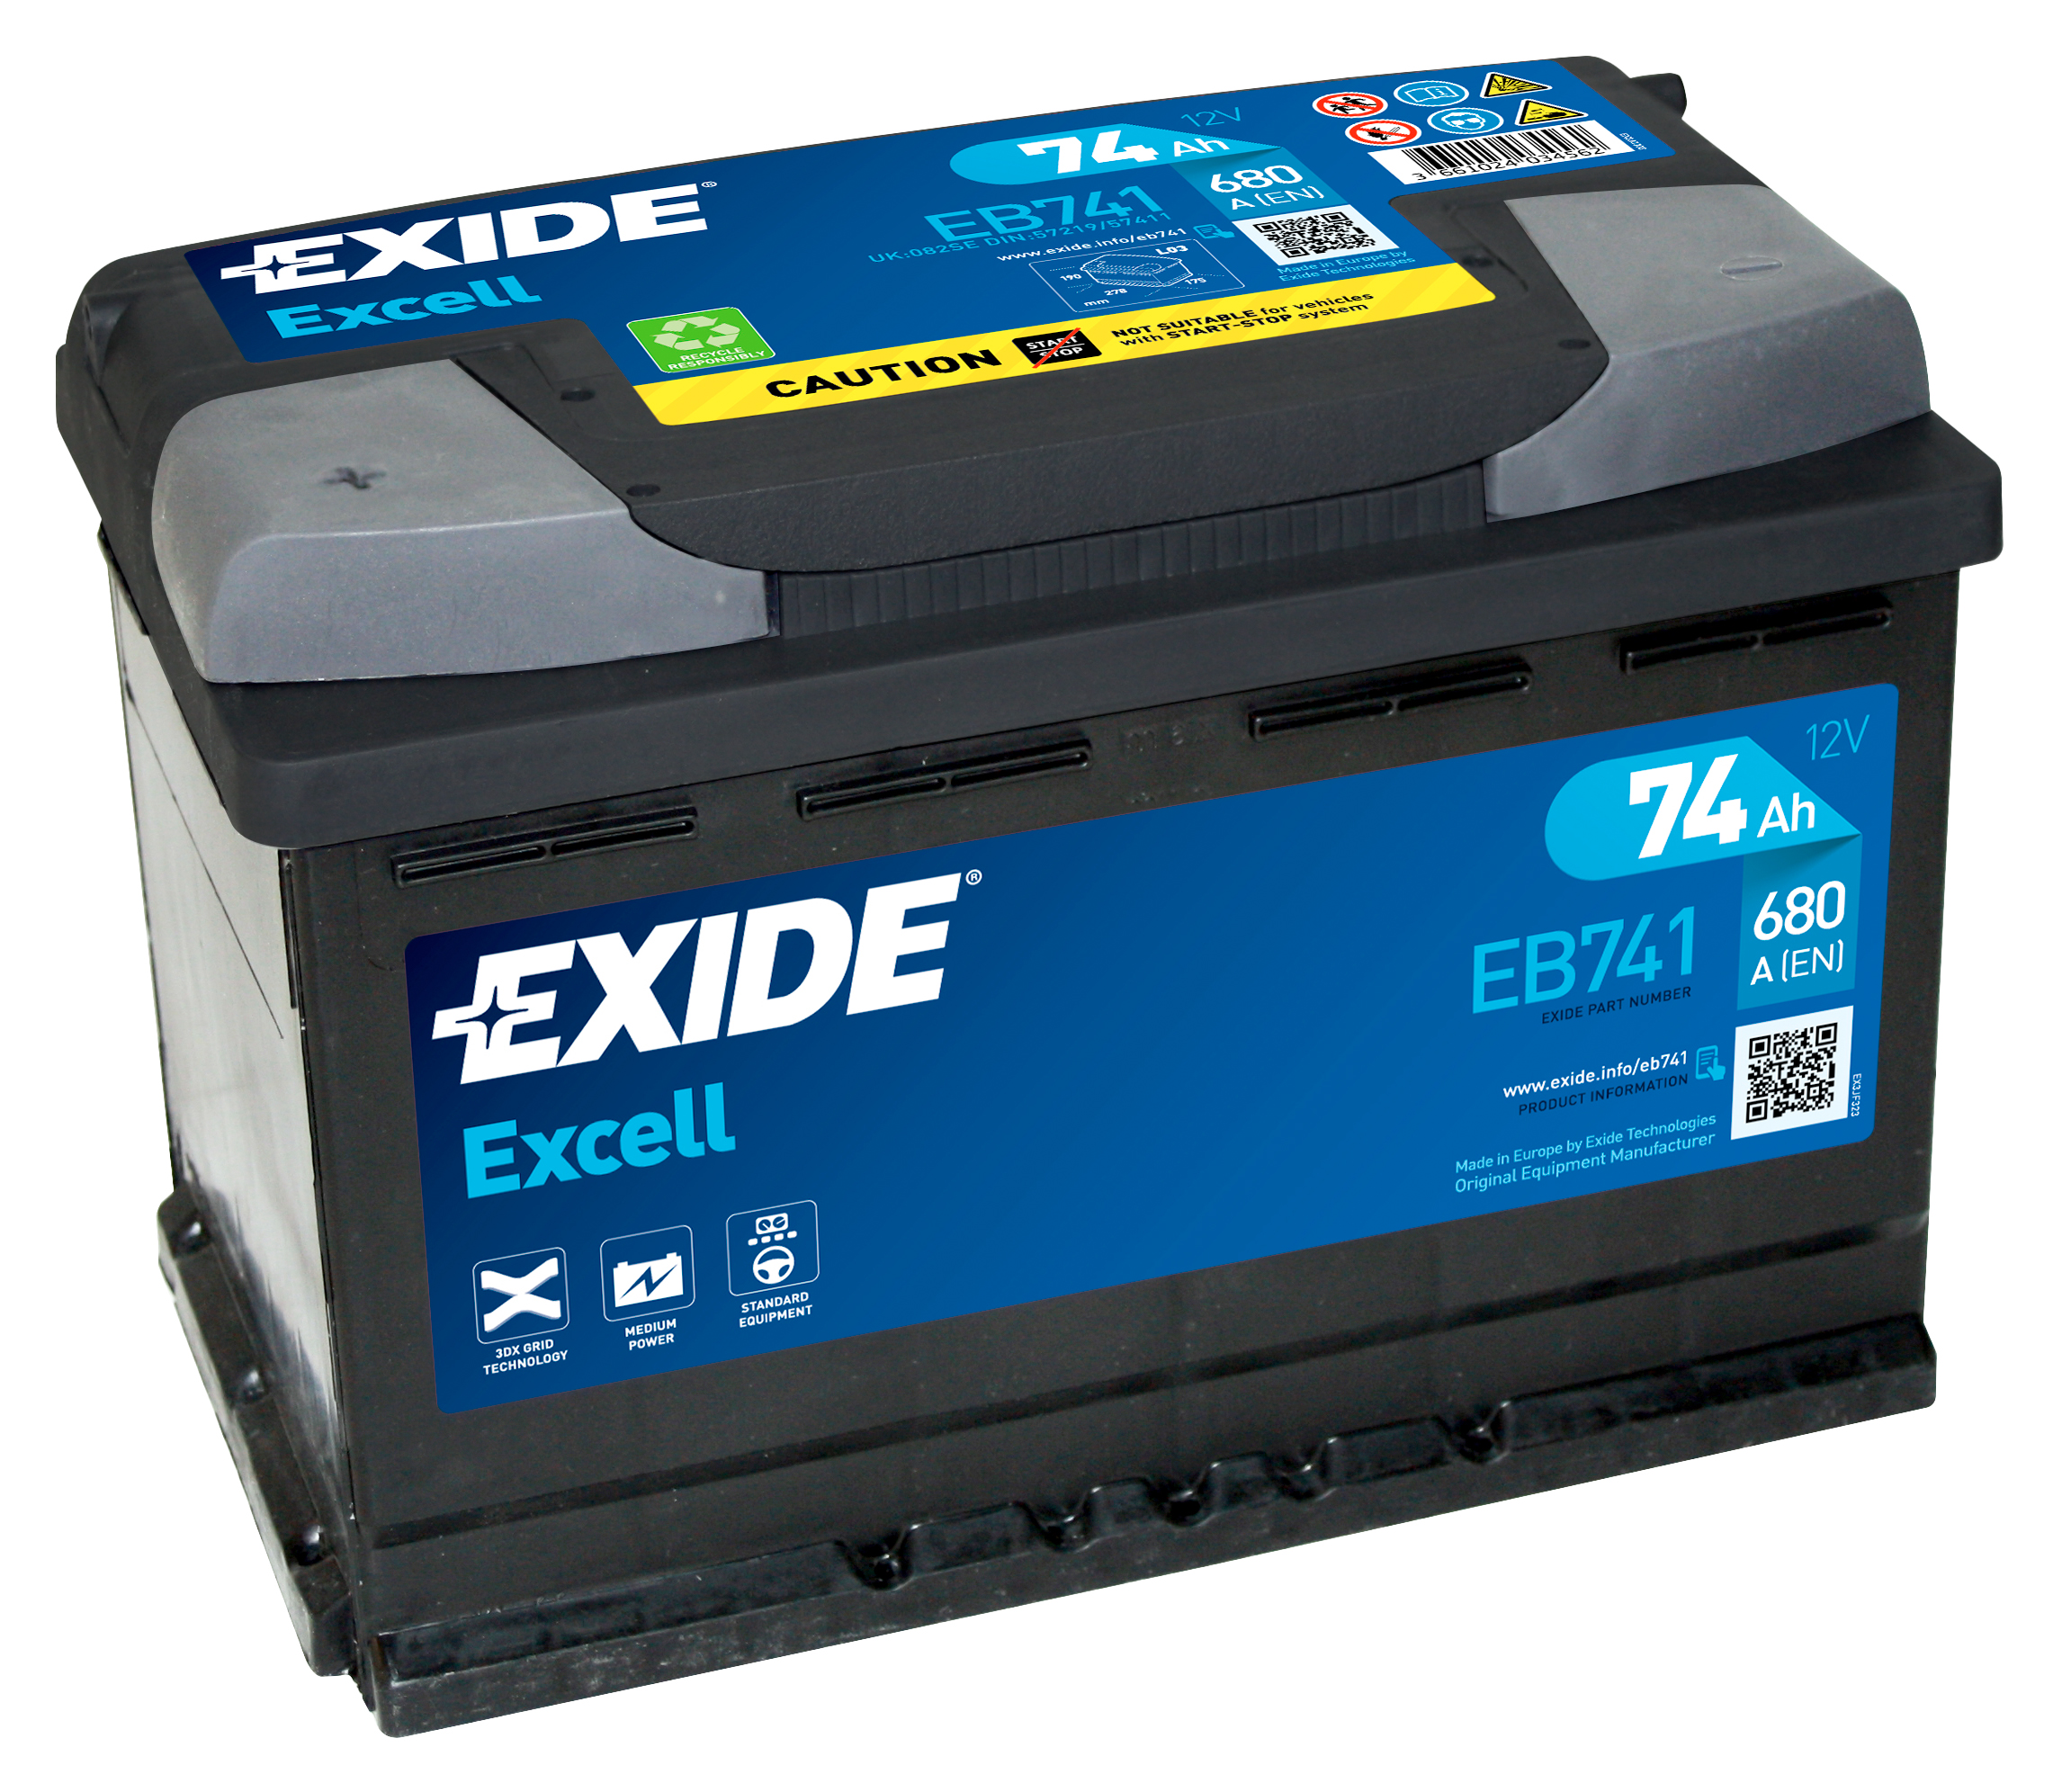 Аккумулятор EXIDE автомобильный EXCELL 74Ah 680A (EN) Кислотный EXIDE EB741